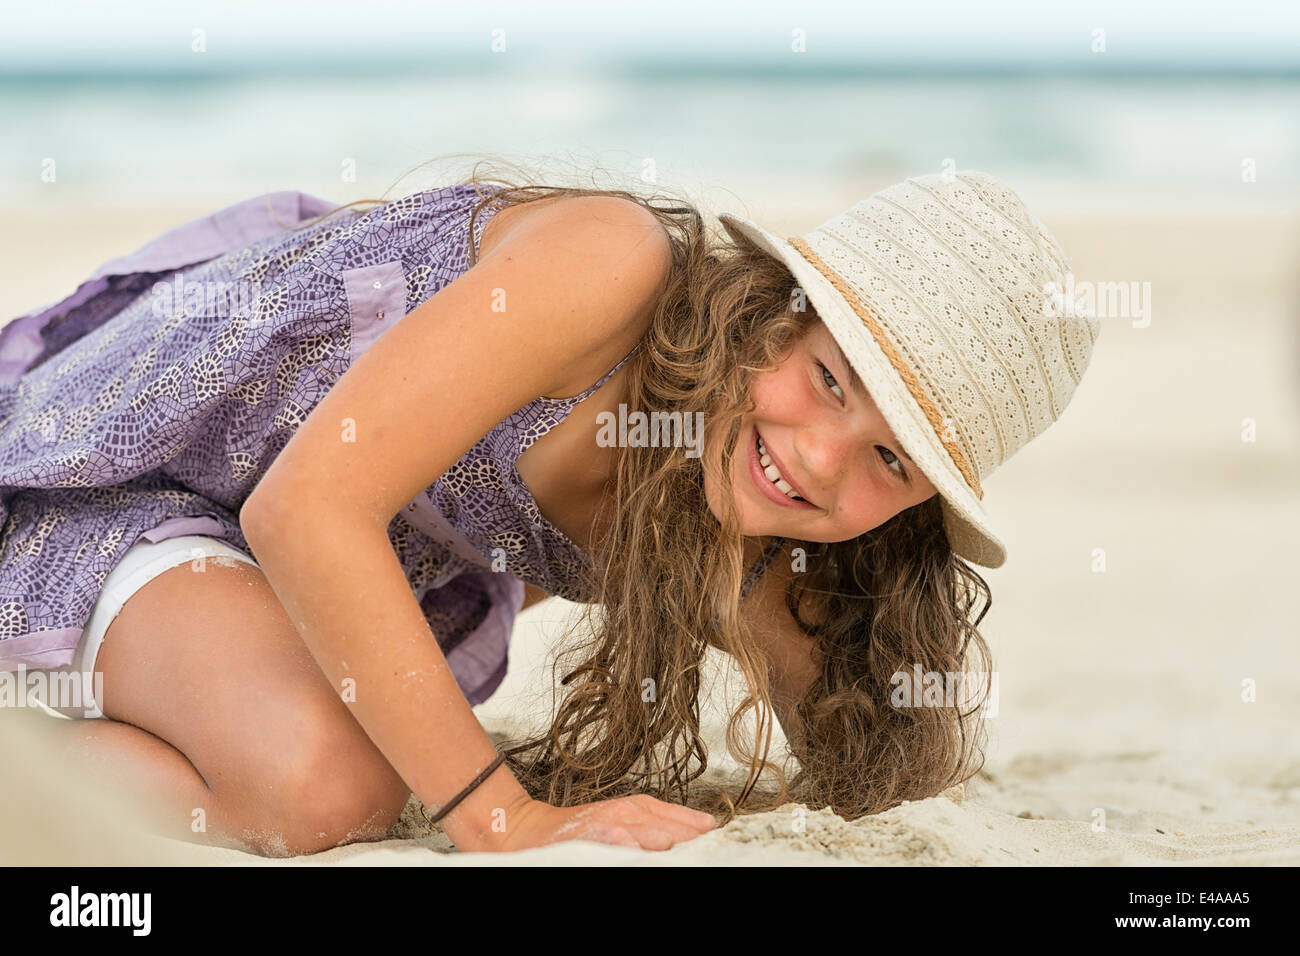 Australia, Nuovo Galles del Sud, Pottsville, ragazza giocando in sabbia sulla spiaggia Foto Stock